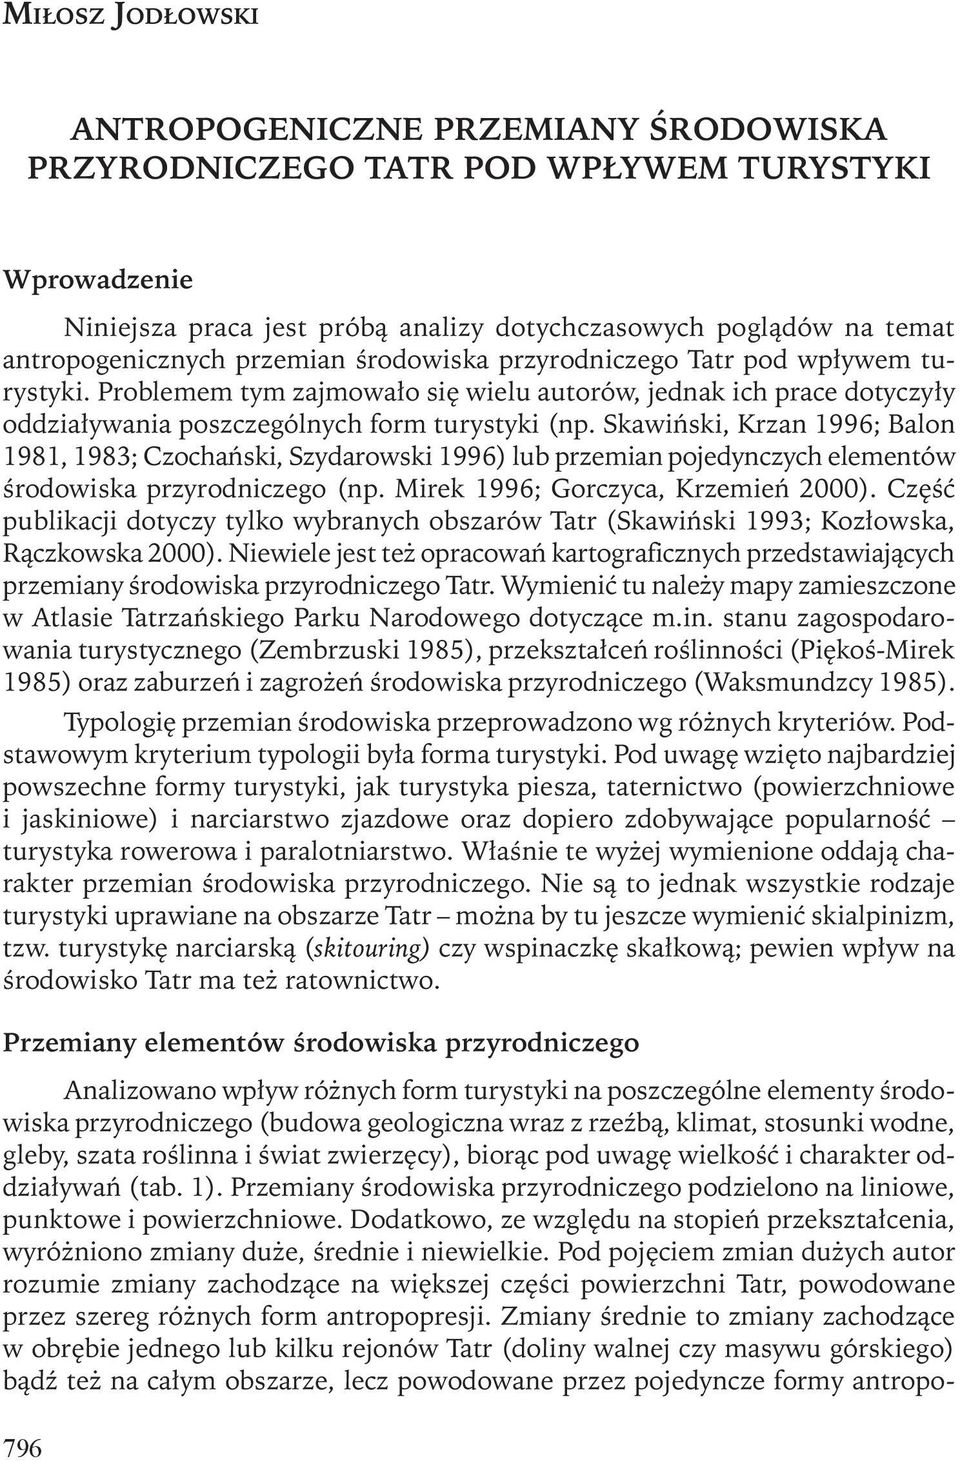 Skawiński, Krzan 1996; Balon 1981, 1983; Czochański, Szydarowski 1996) lub przemian pojedynczych elementów środowiska przyrodniczego (np. Mirek 1996; Gorczyca, Krzemień 2000).